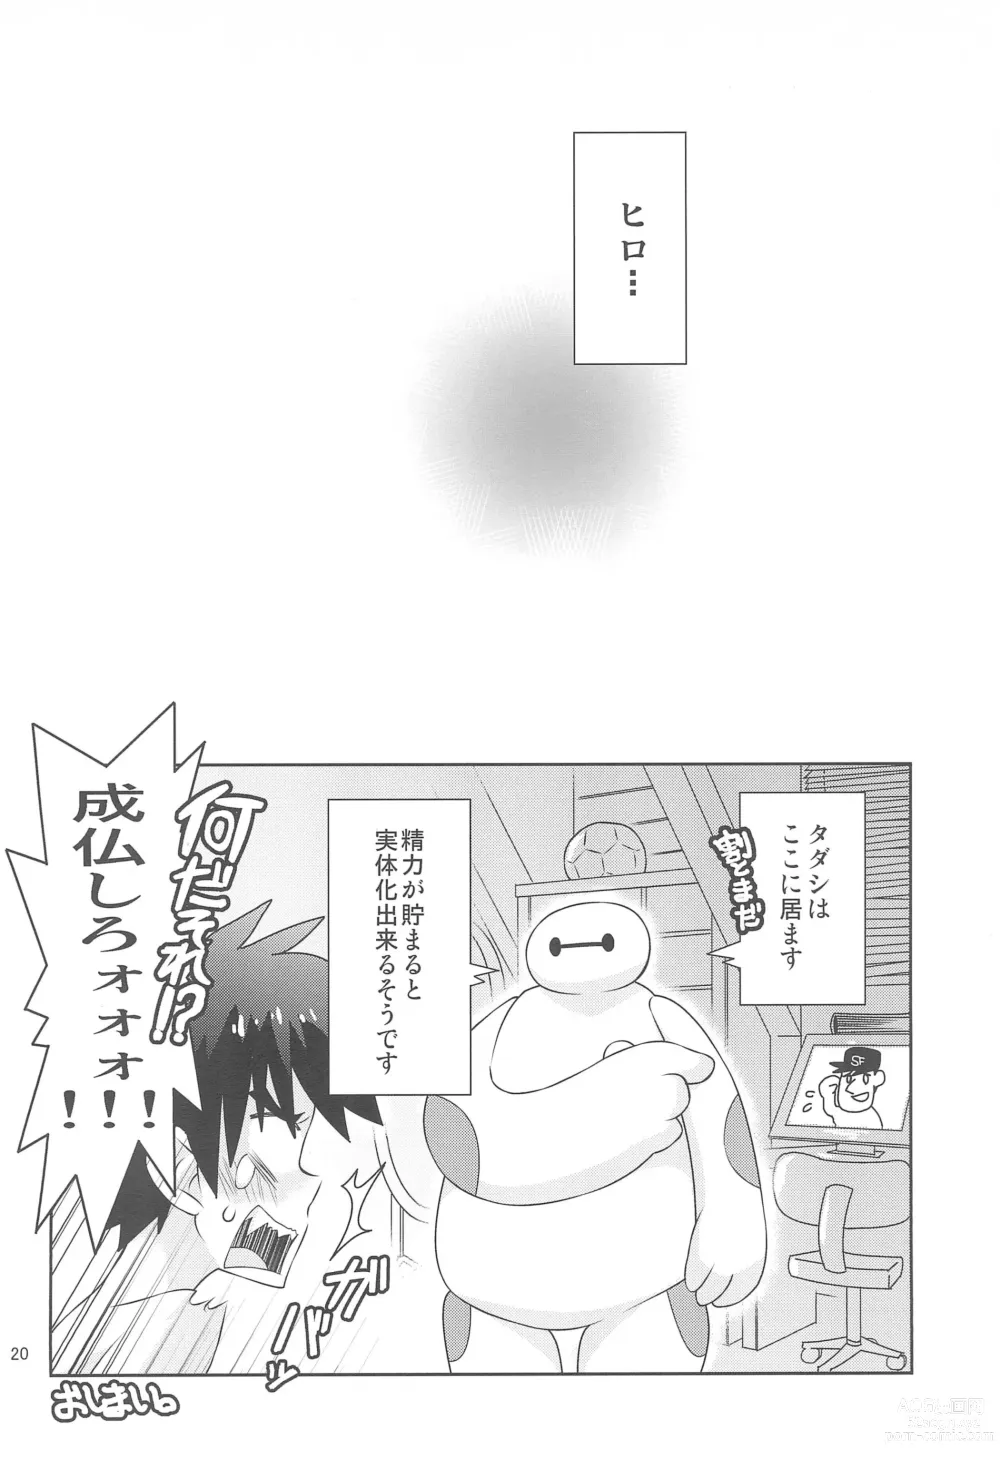 Page 20 of doujinshi Hiro-kun no Hajimete.